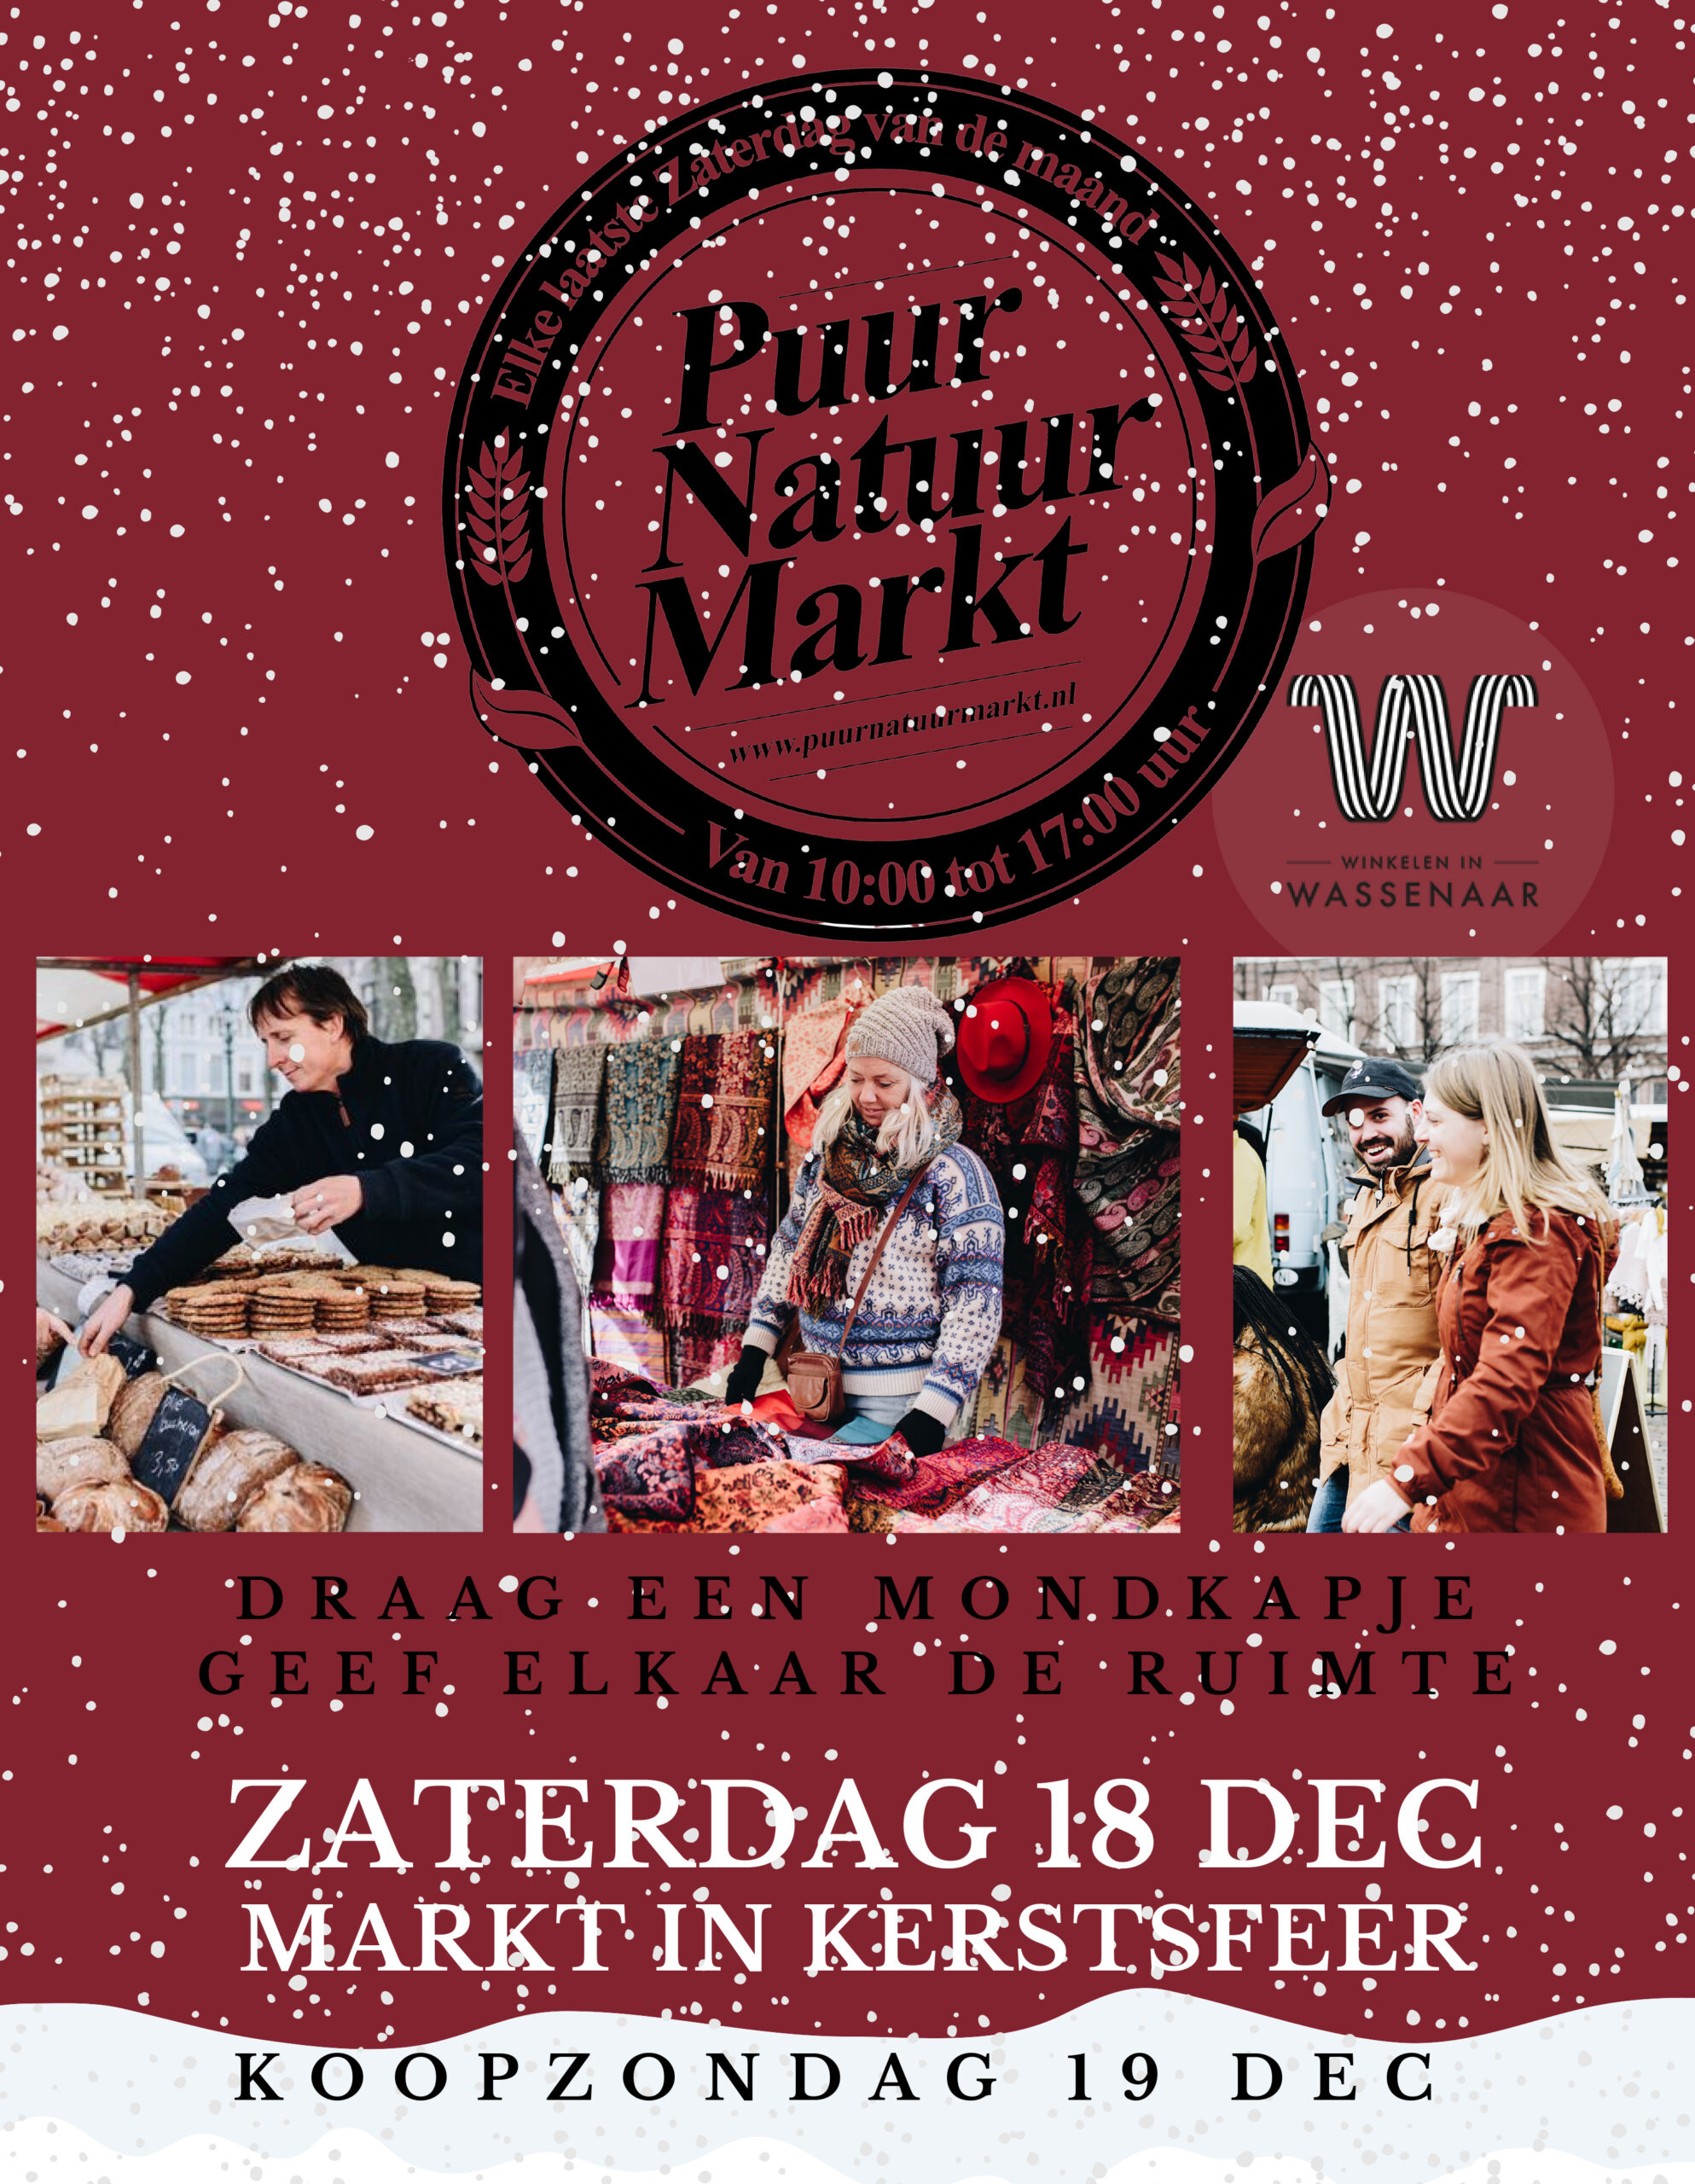 18 december Puur Natuur Markt in kerstsfeer en 19 december koopzondag